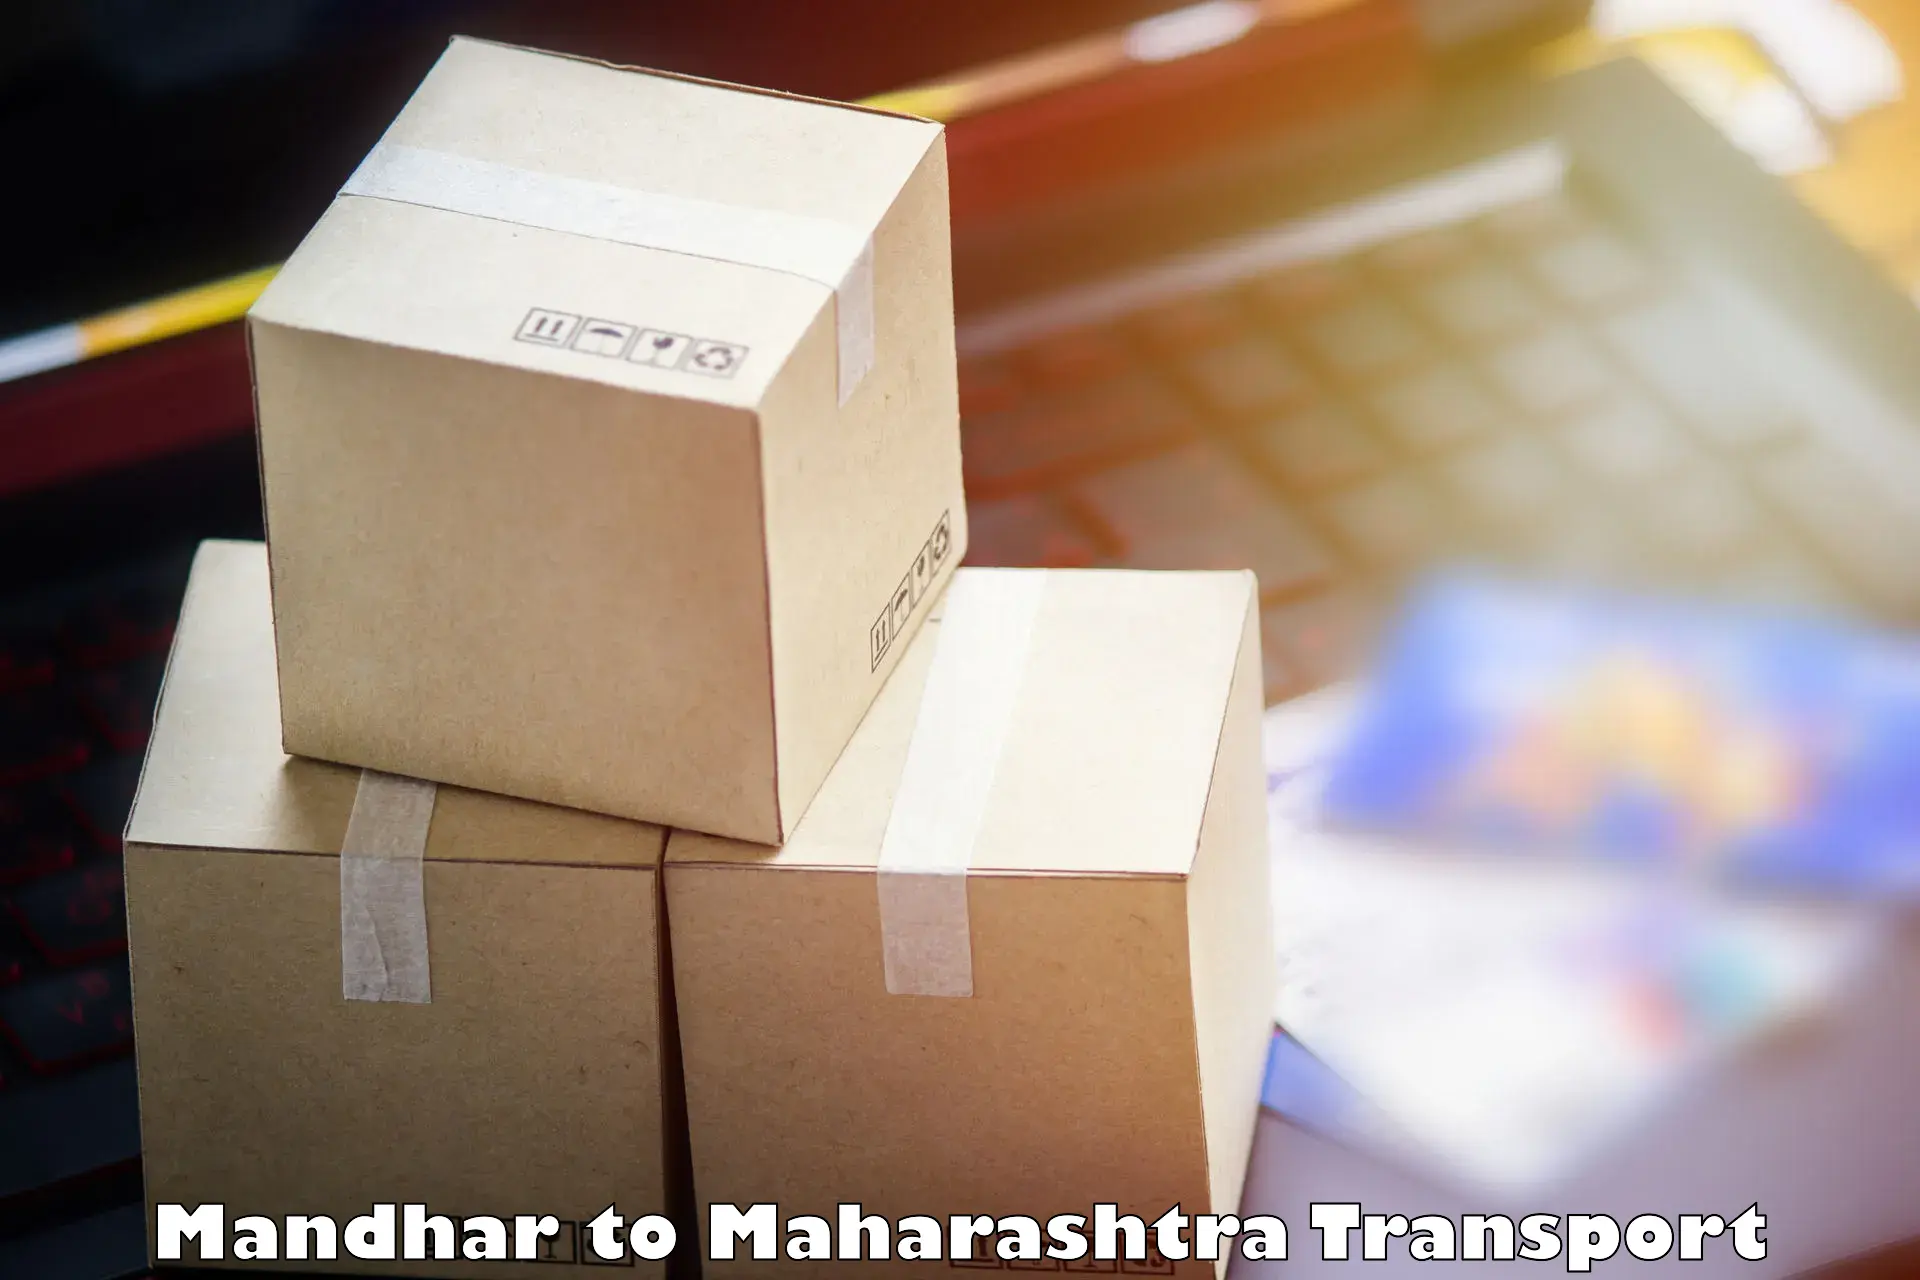 Furniture transport service Mandhar to Fardapur